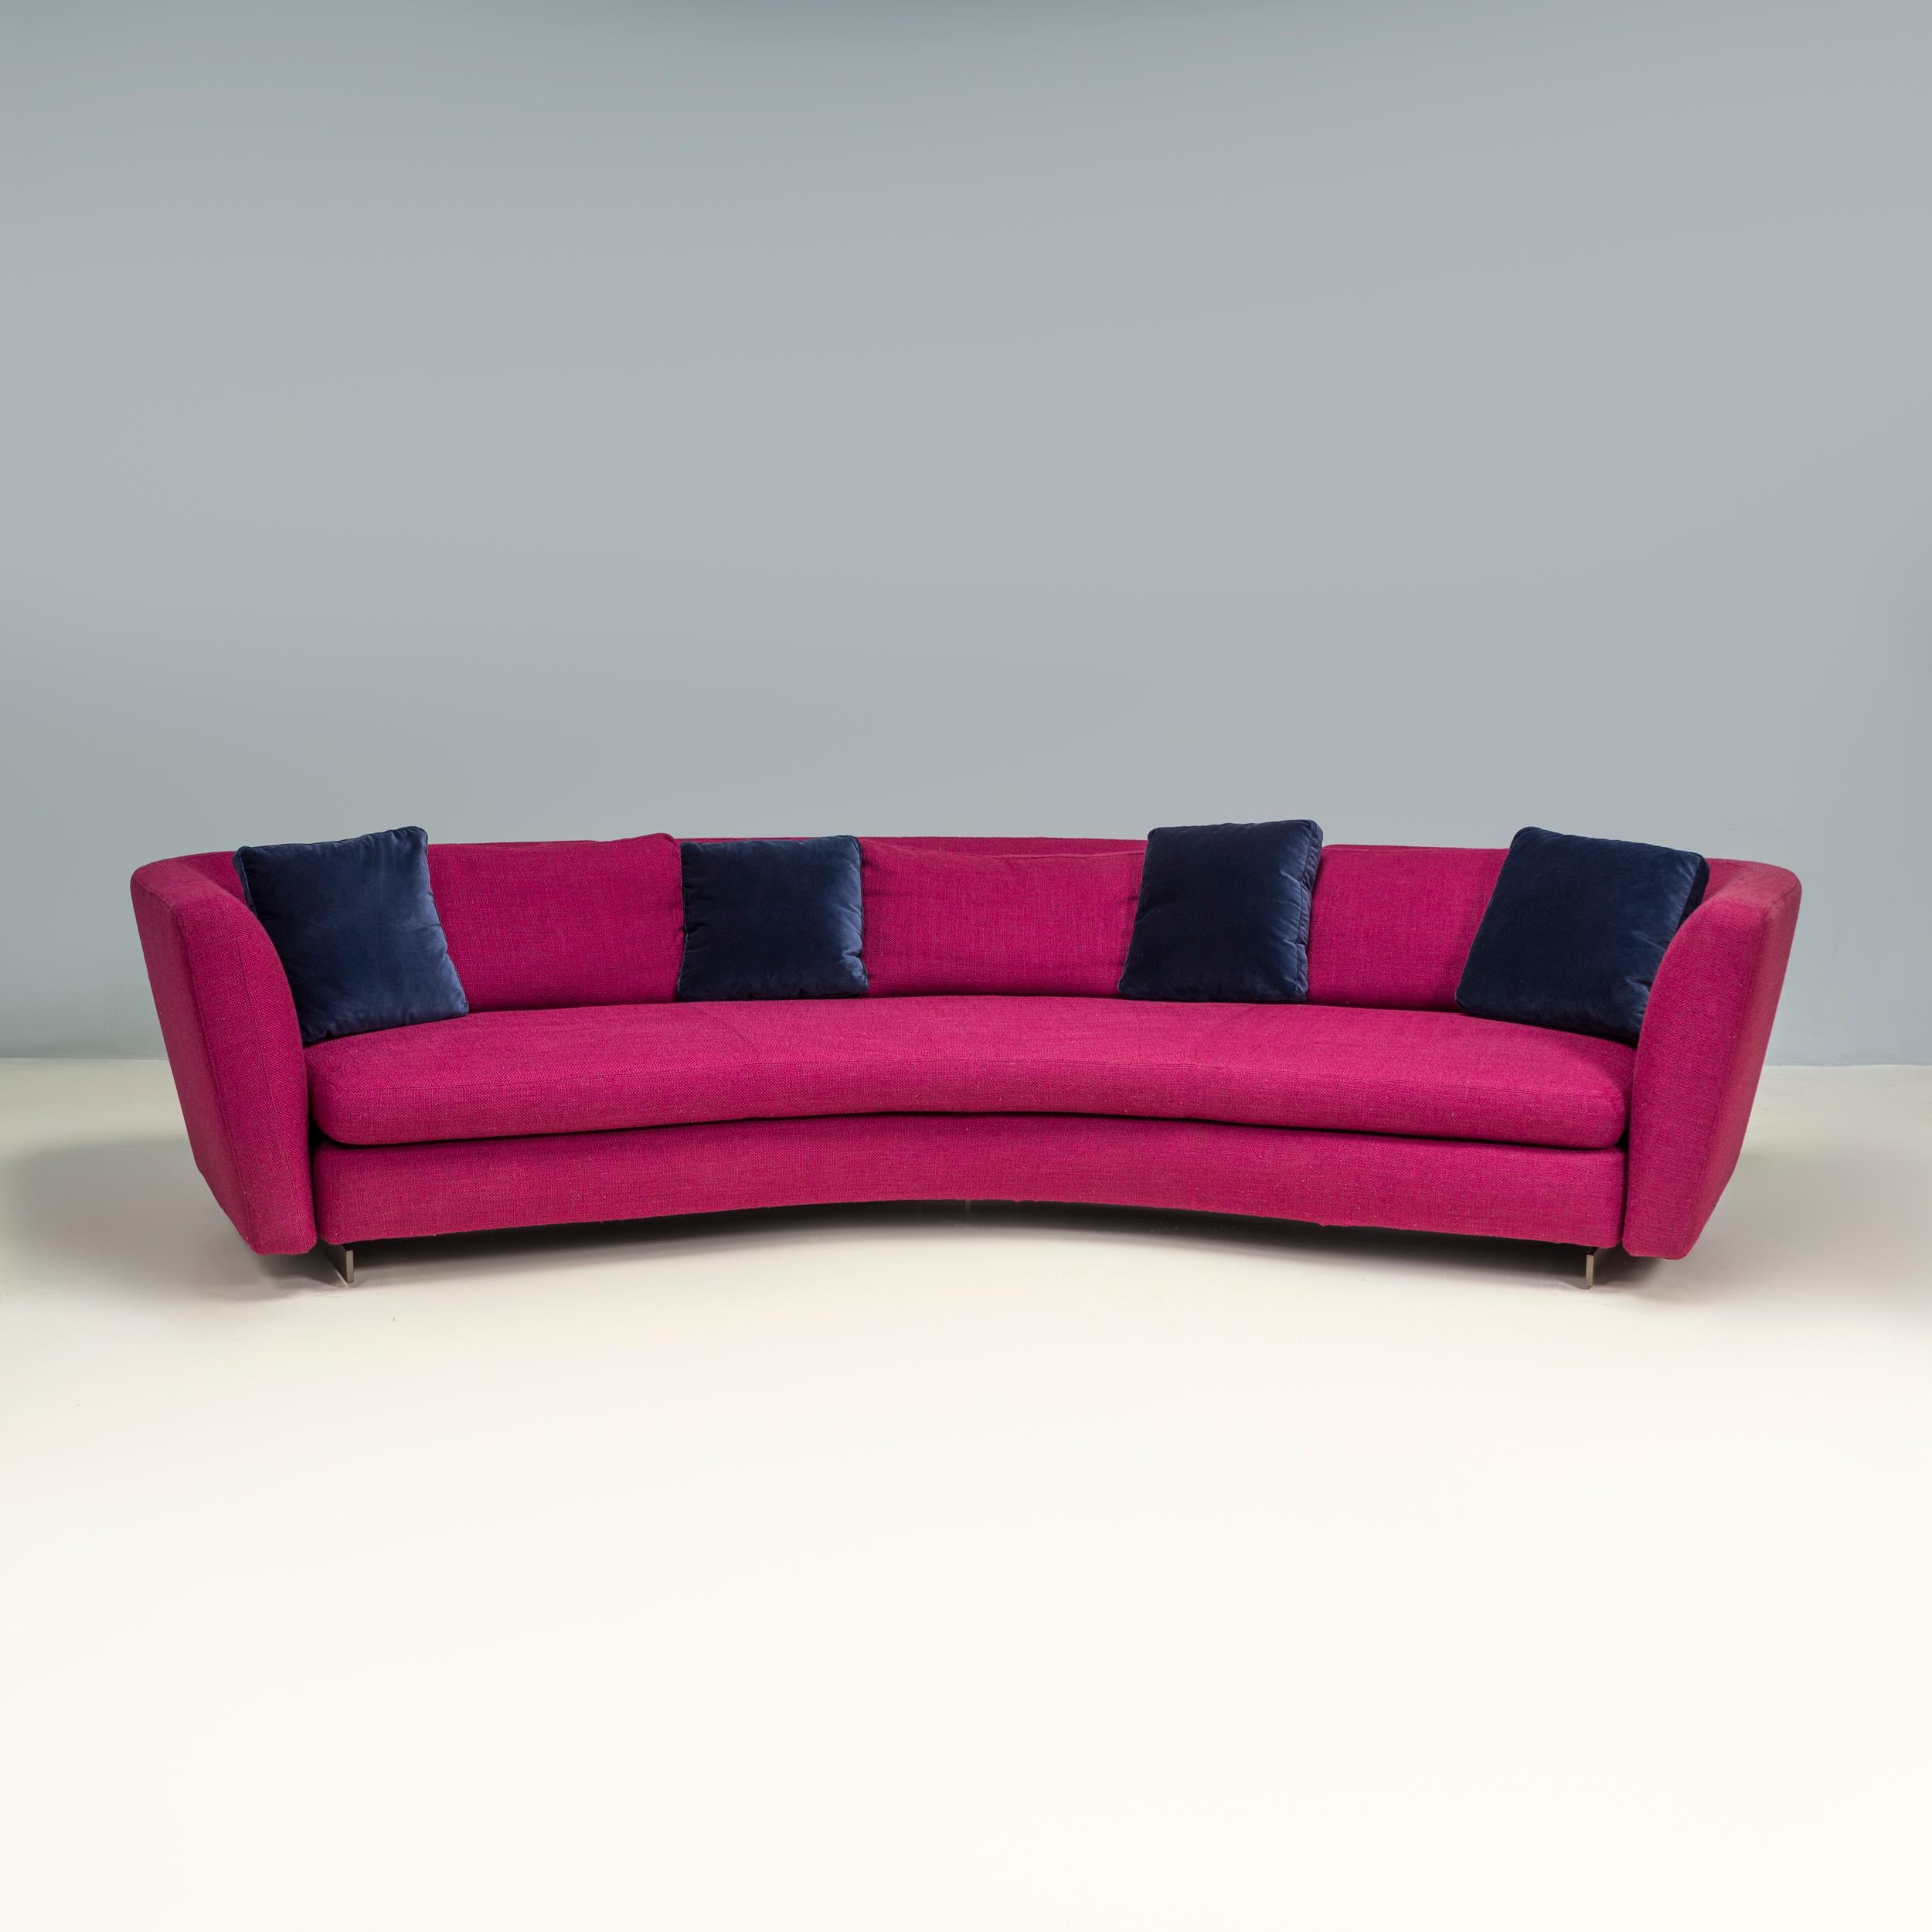 Conçu à l'origine par Roldolfo Dordoni en 2015 et fabriqué par Minotti, le canapé bas semi-rond Seymour est un exemple fantastique de design italien moderne. 

Doté d'une silhouette galbée, le canapé présente une assise semi-circulaire avec un